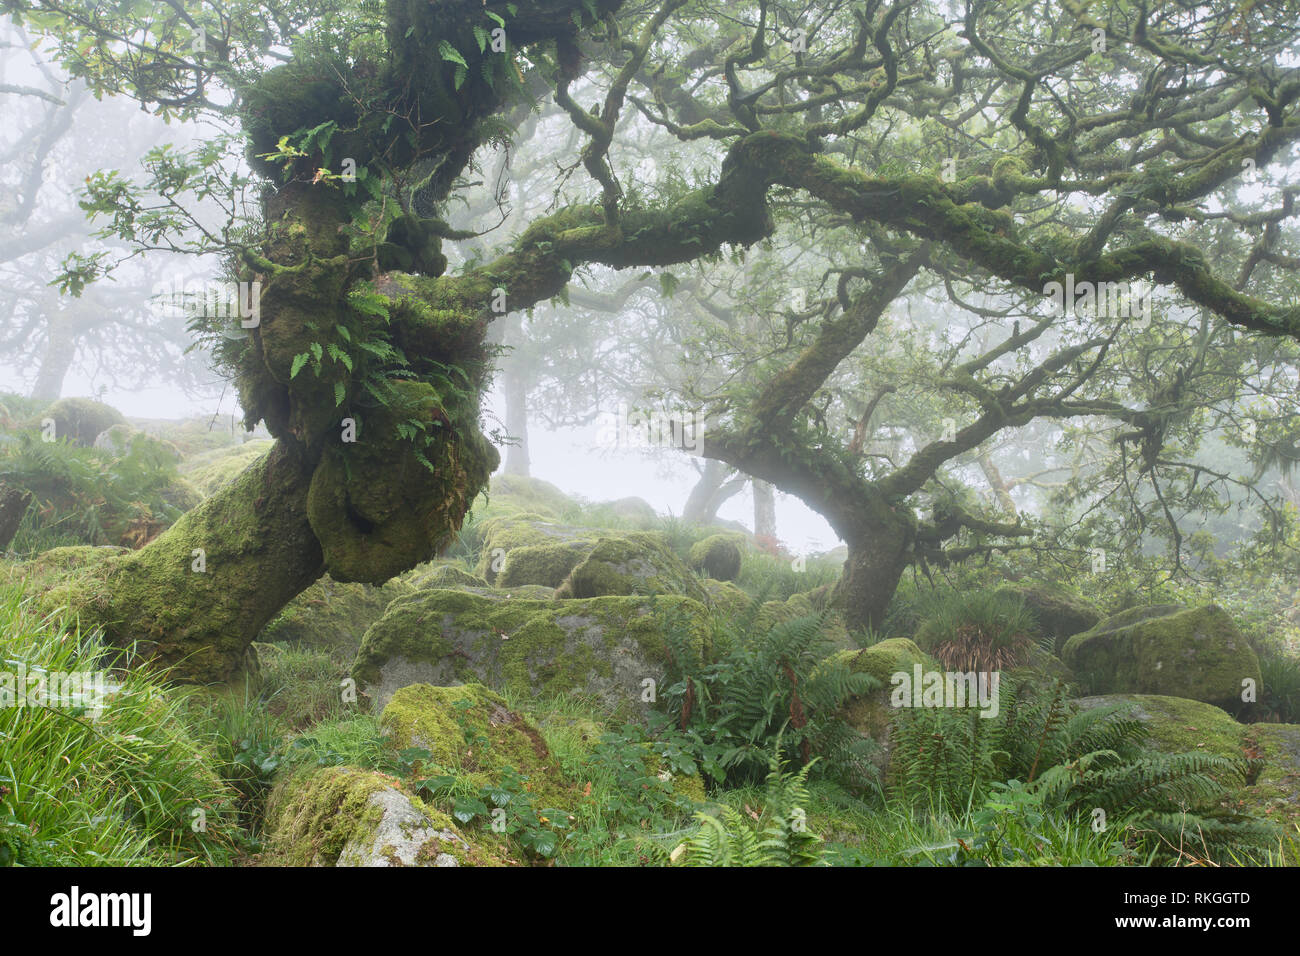 Wistmans wood Dartmoor national park Devon Uk Stock Photo